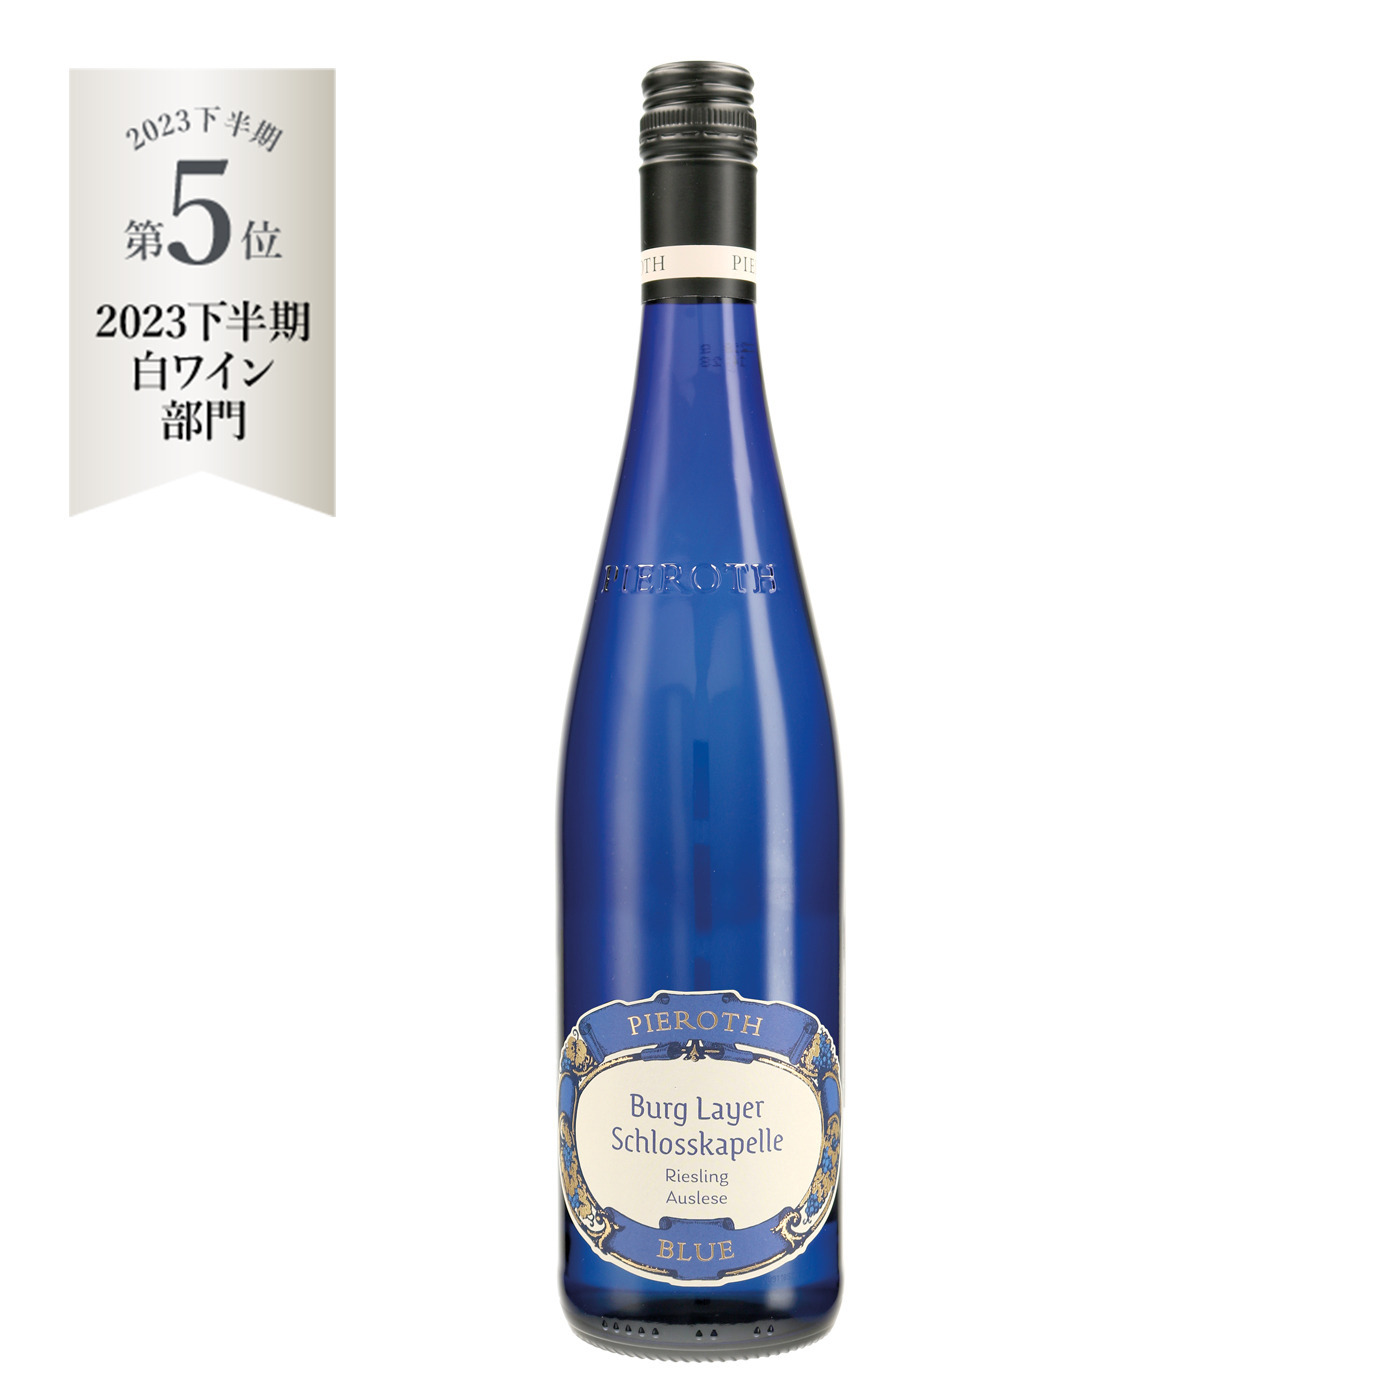 ピーロート・ブルー アウスレーゼ (2020) ピーロート・ジャパン ハイエンド・高級ワイン通販